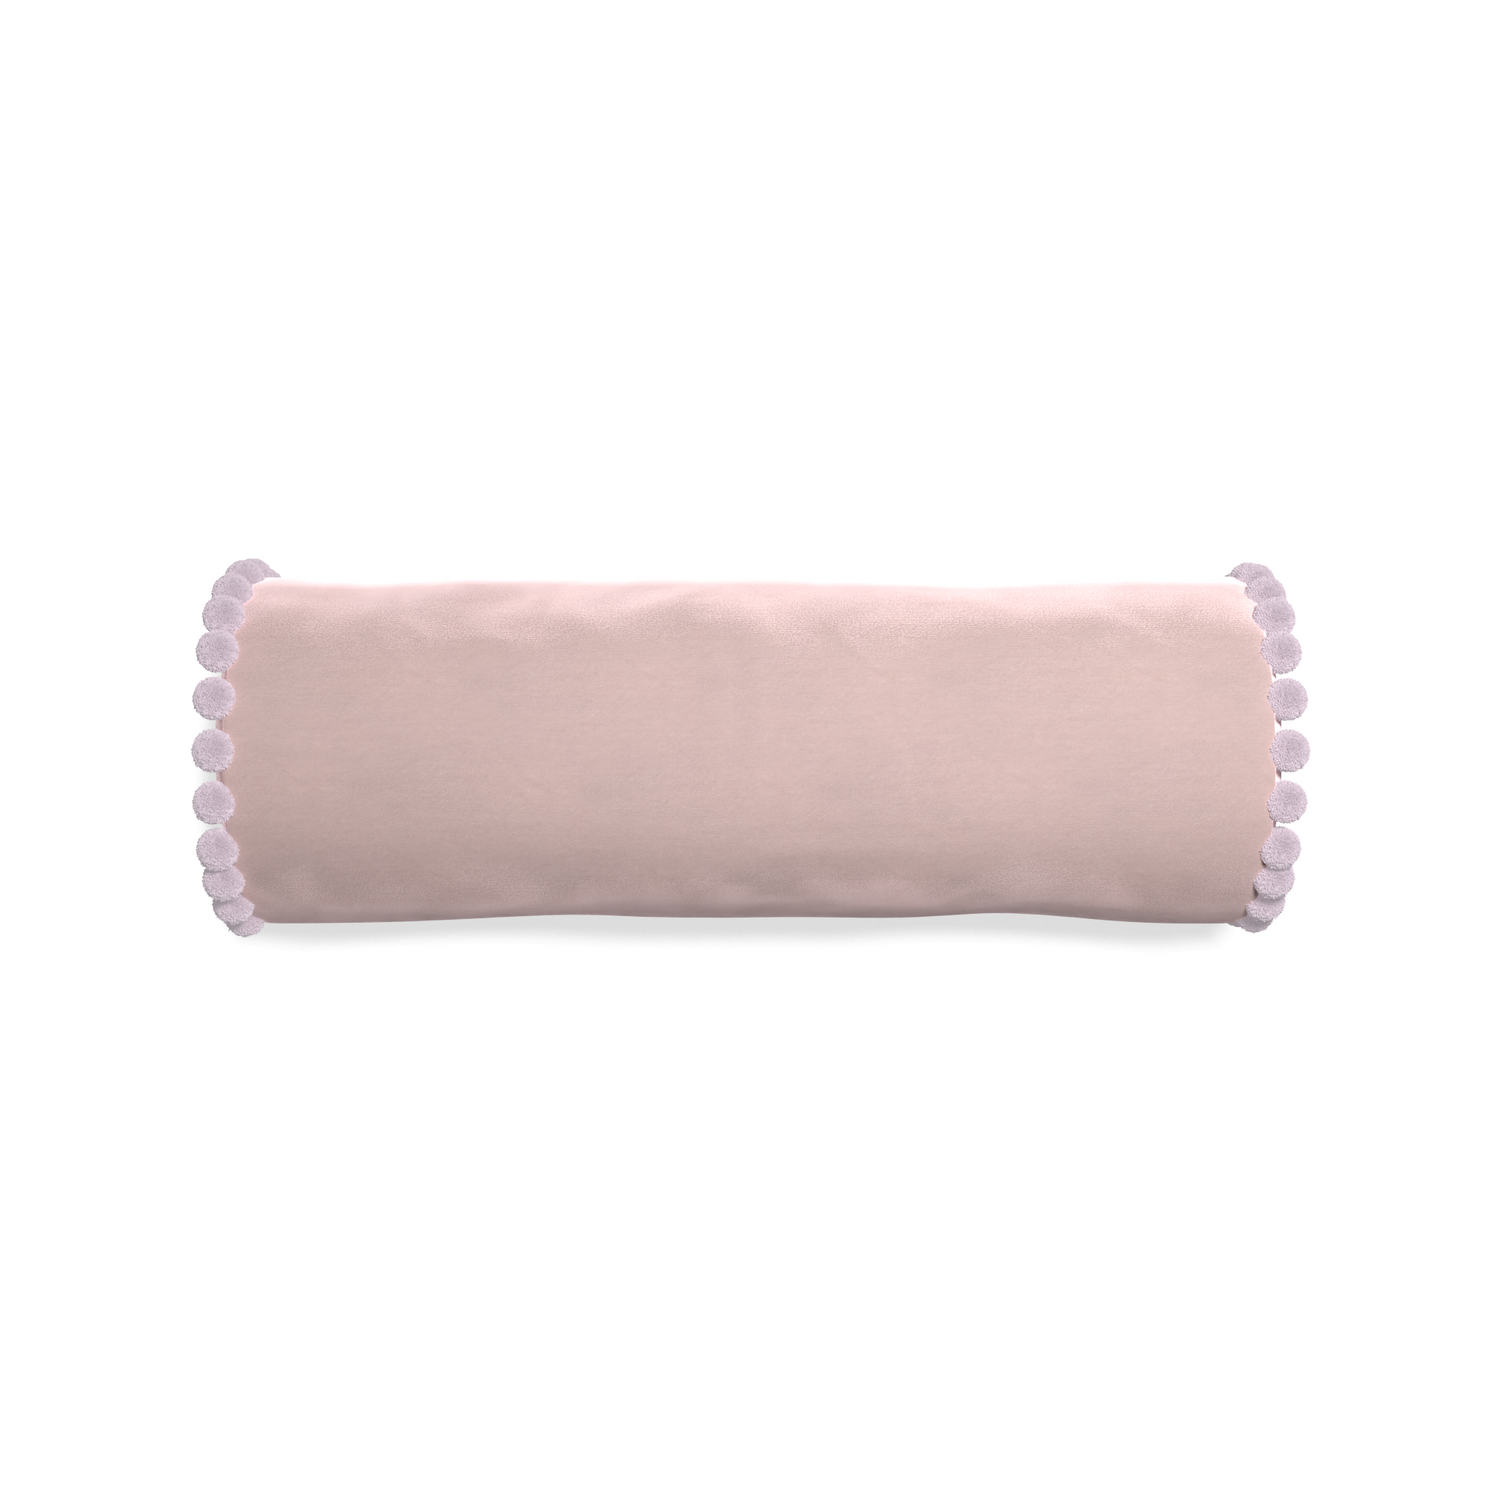 Bolster rose velvet custom pillow with l on white background